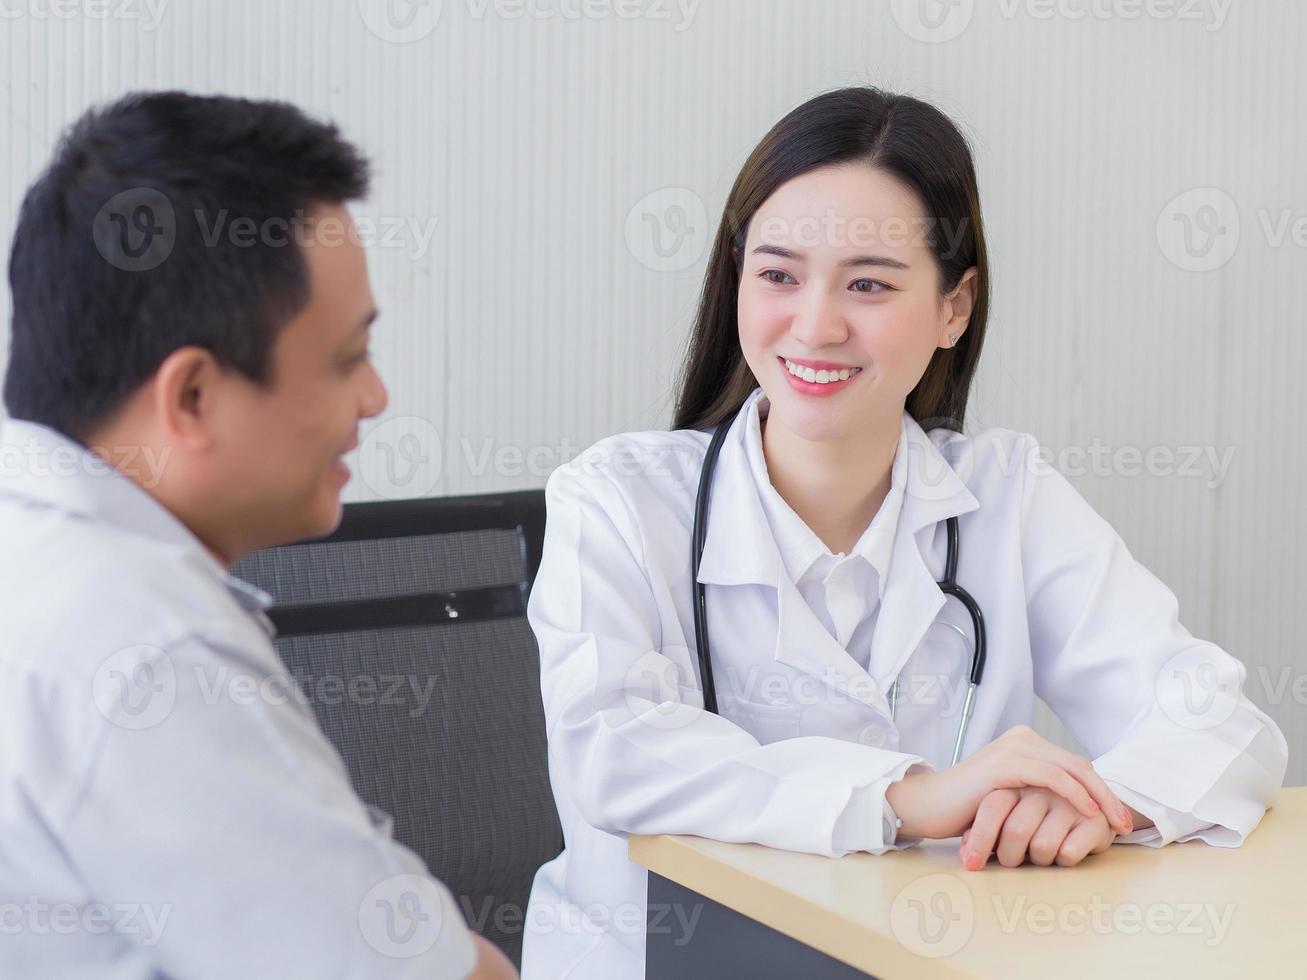 belle jeune femme médecin asiatique professionnelle parlant avec un homme patient de sa douleur et de ses symptômes pendant qu'ils mettent un masque facial et un thermomètre sur la table dans la salle d'examen photo